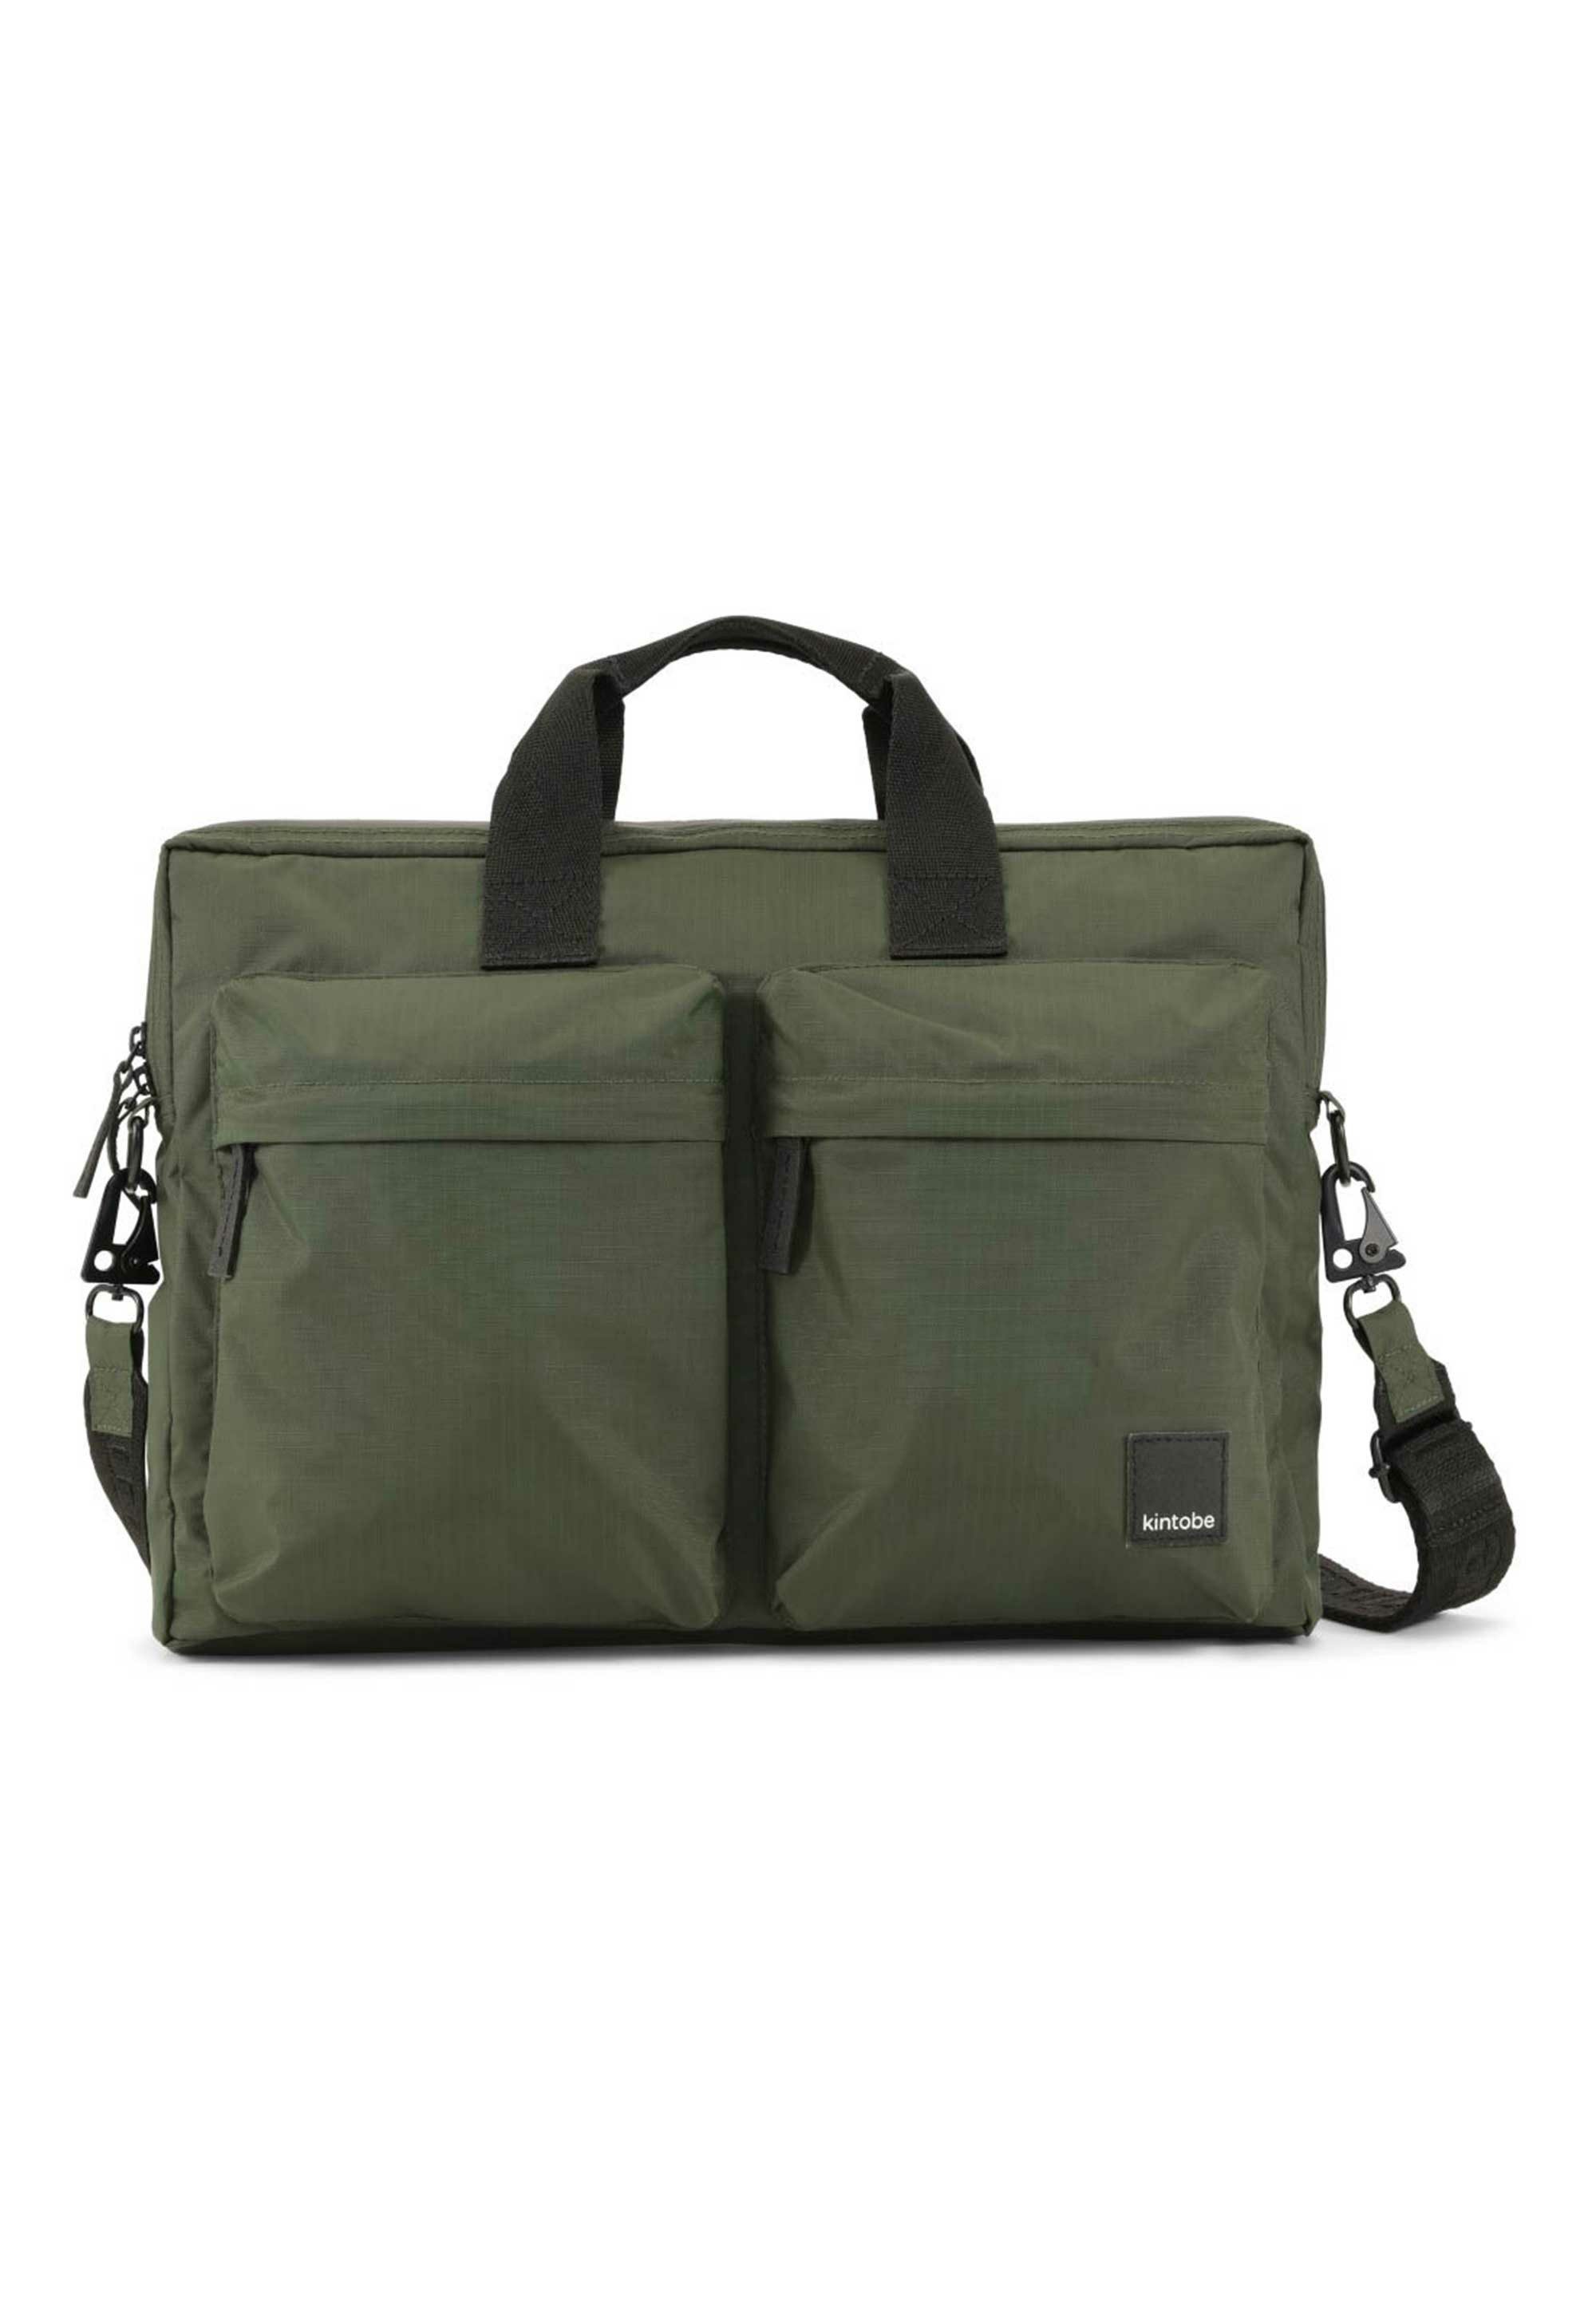 kintobe Messenger Bag SAGE, Die hochwertige Ripstop-Nylonqualität, schwarze Metallbeschläge